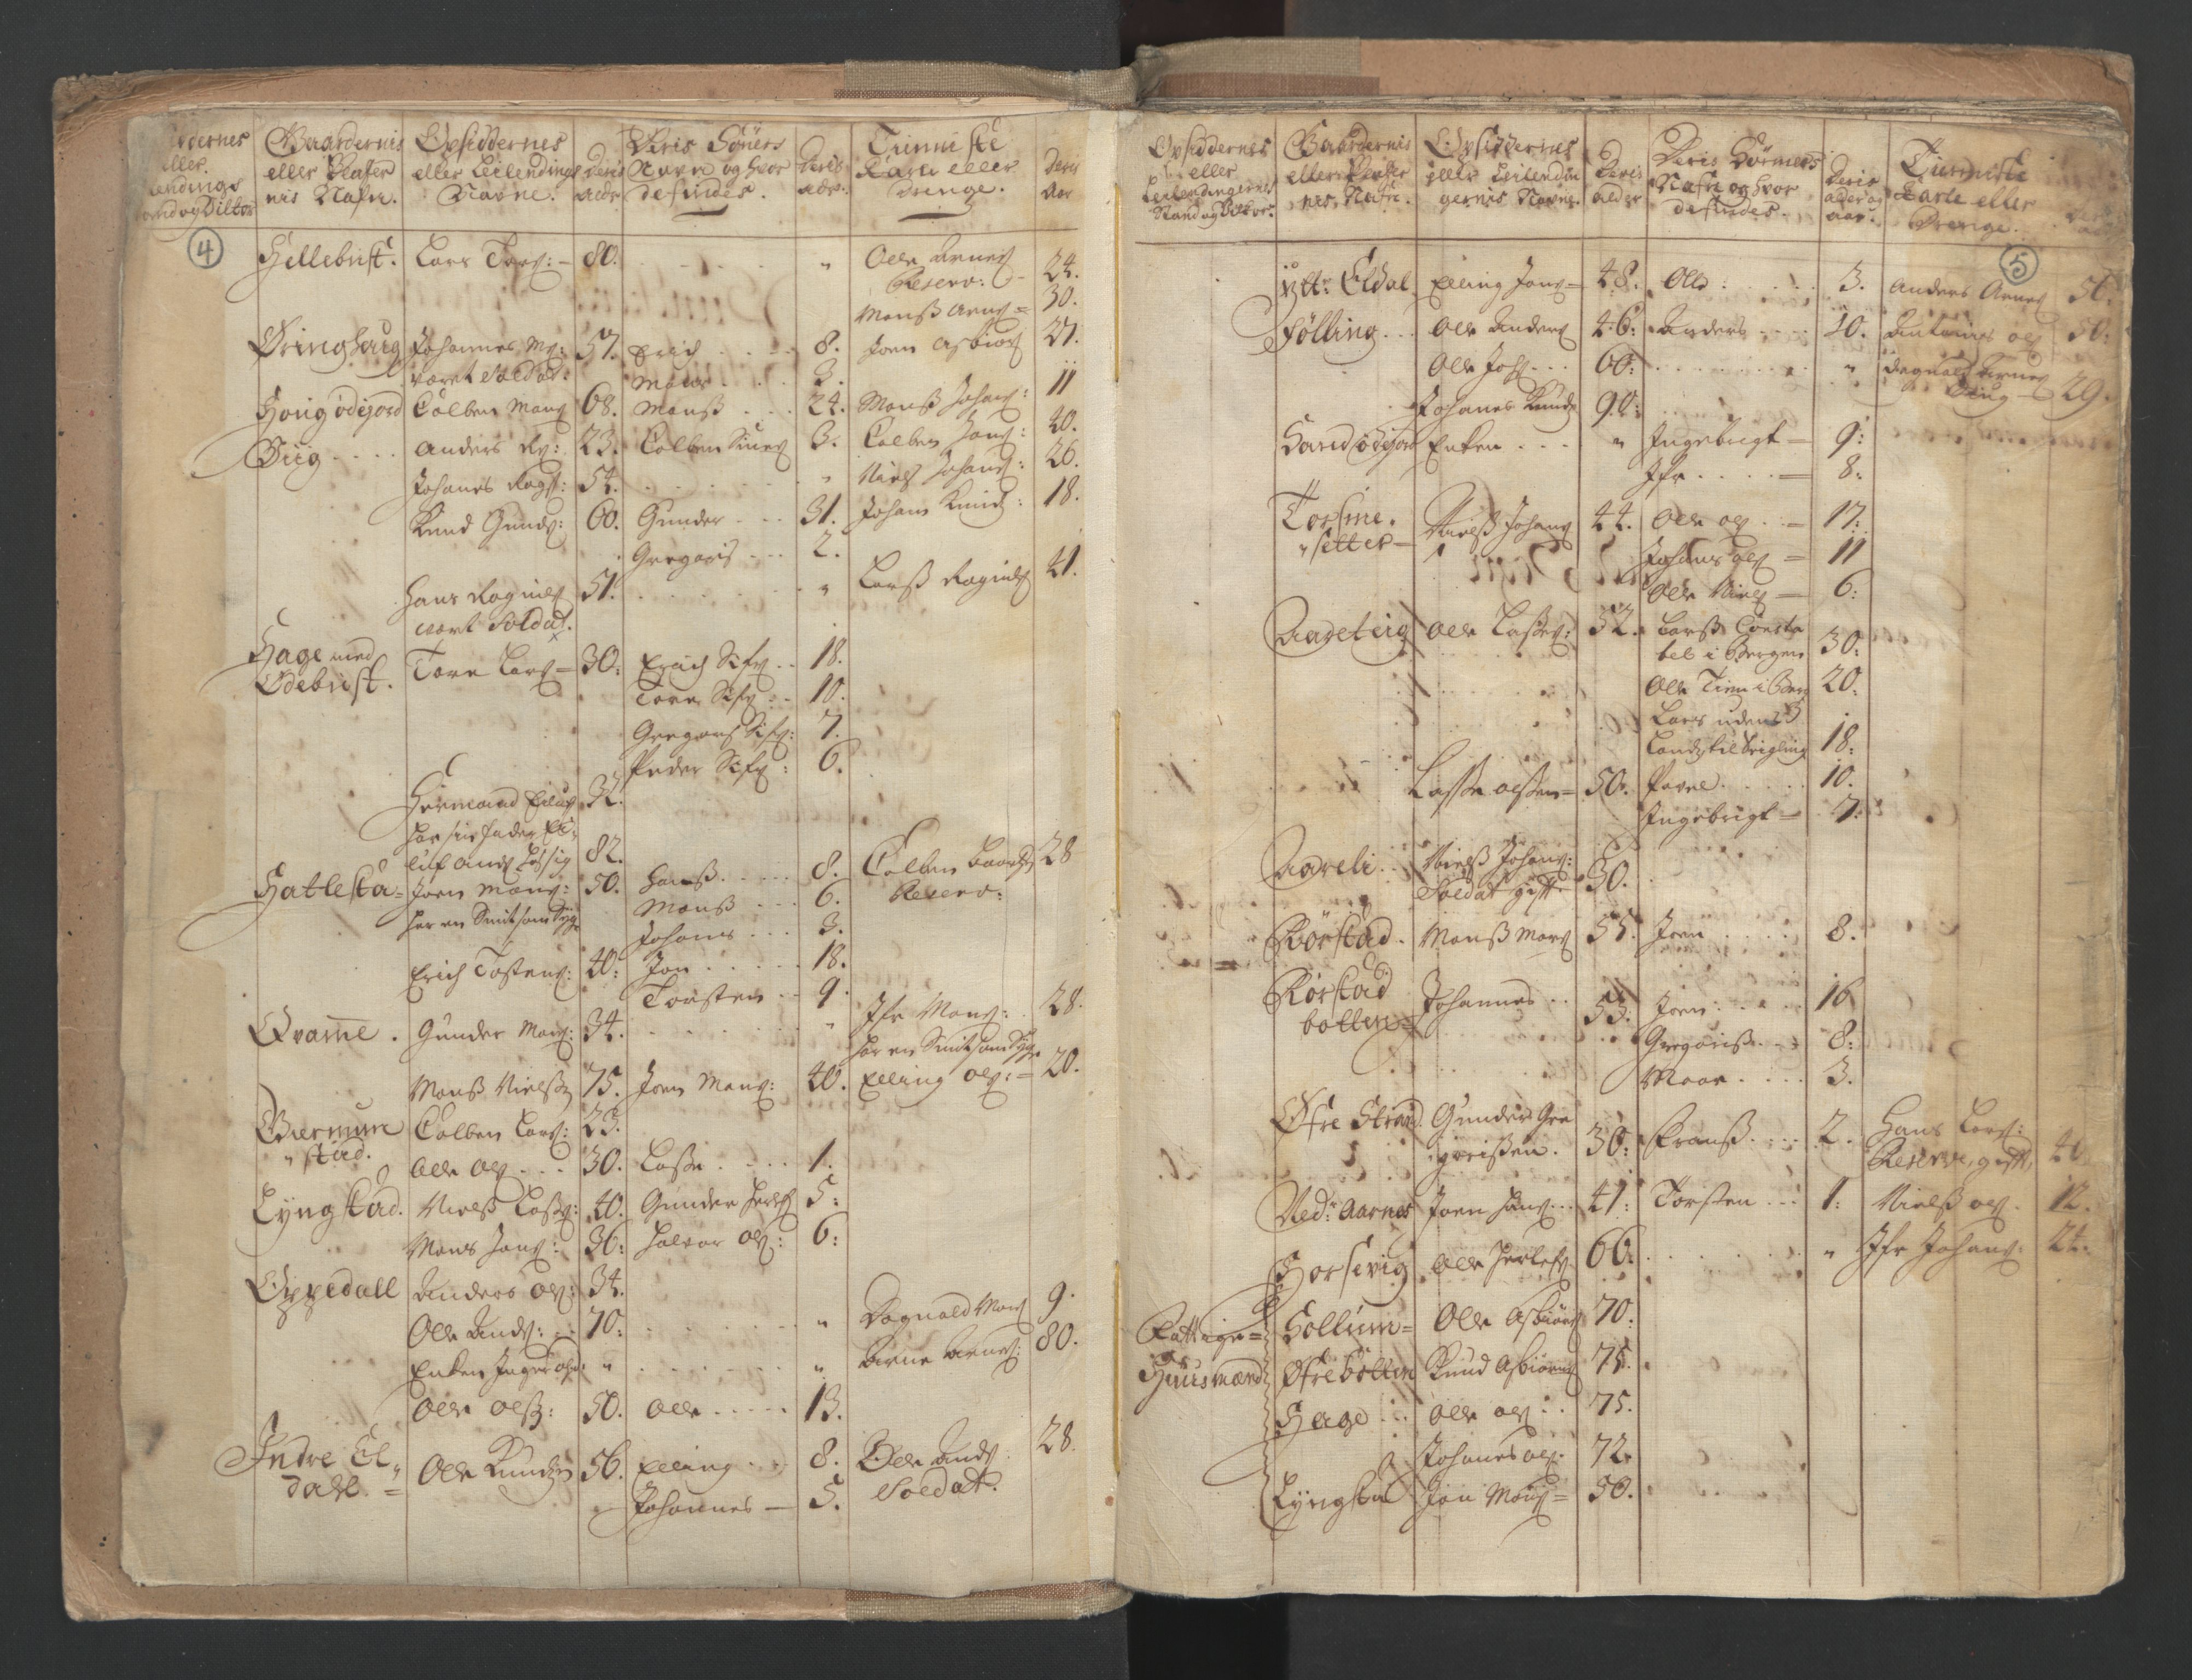 RA, Manntallet 1701, nr. 9: Sunnfjord fogderi, Nordfjord fogderi og Svanø birk, 1701, s. 4-5